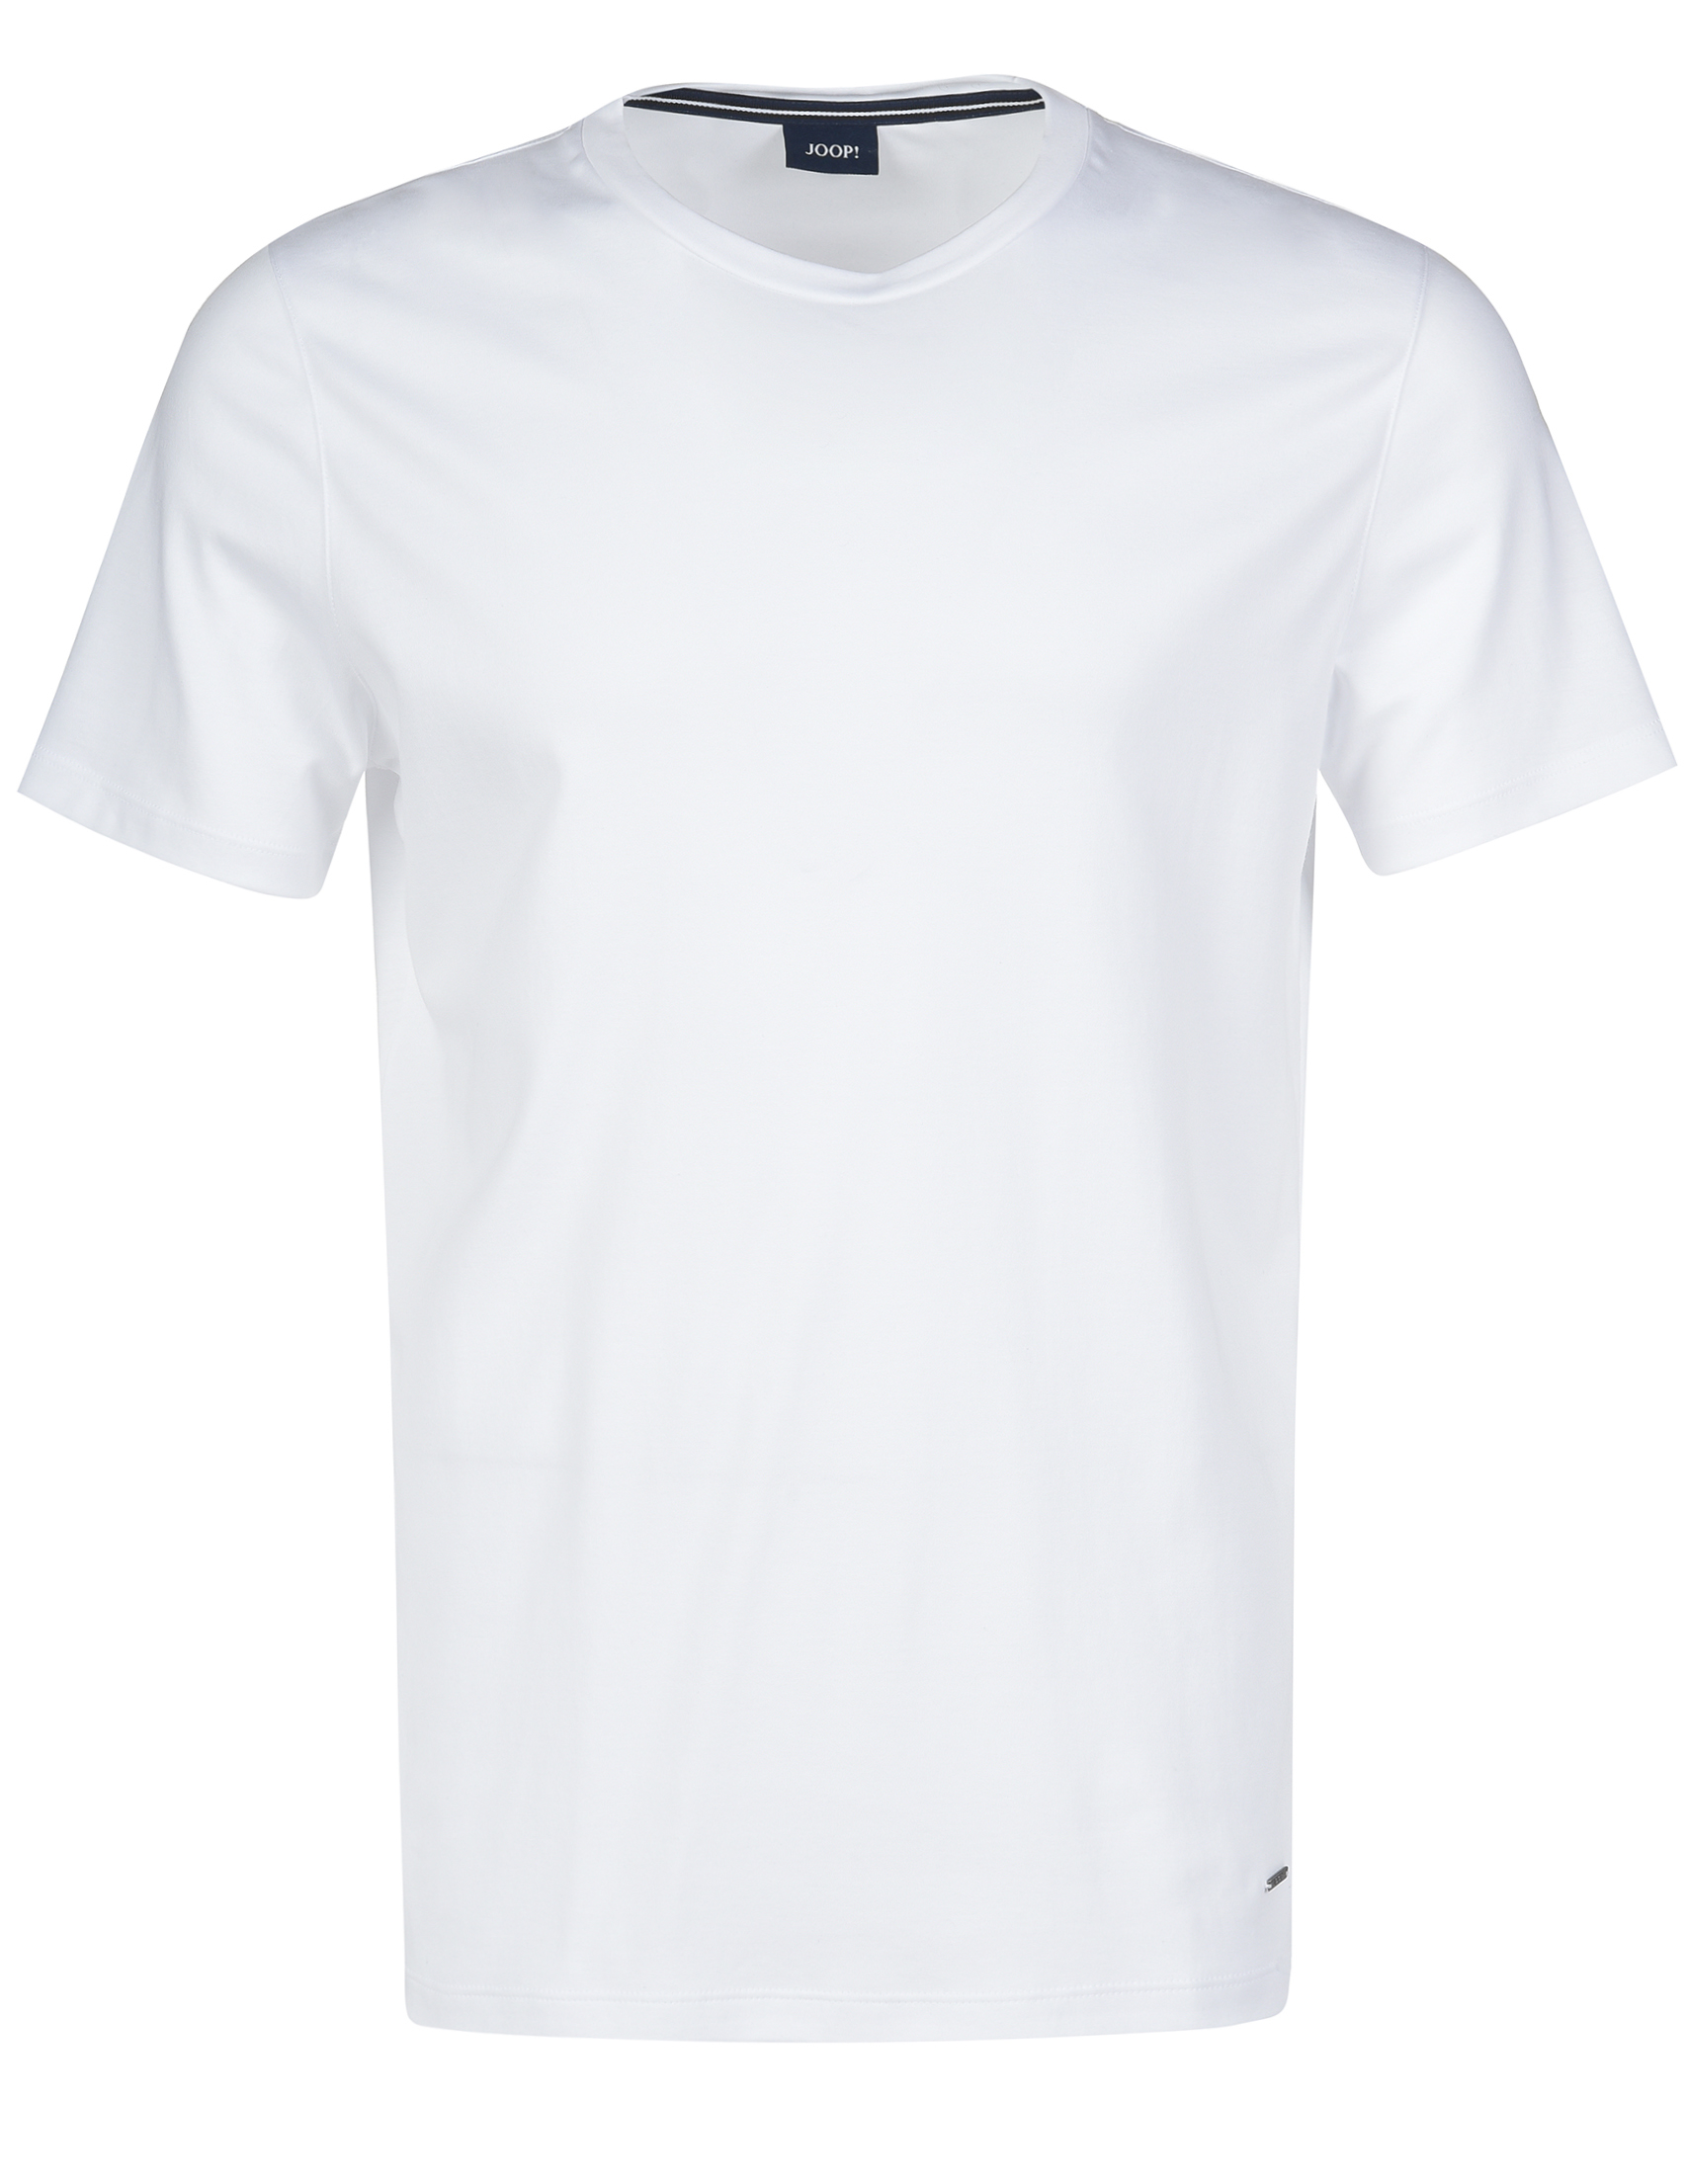 Мужская футболка JOOP 30012893-100_white